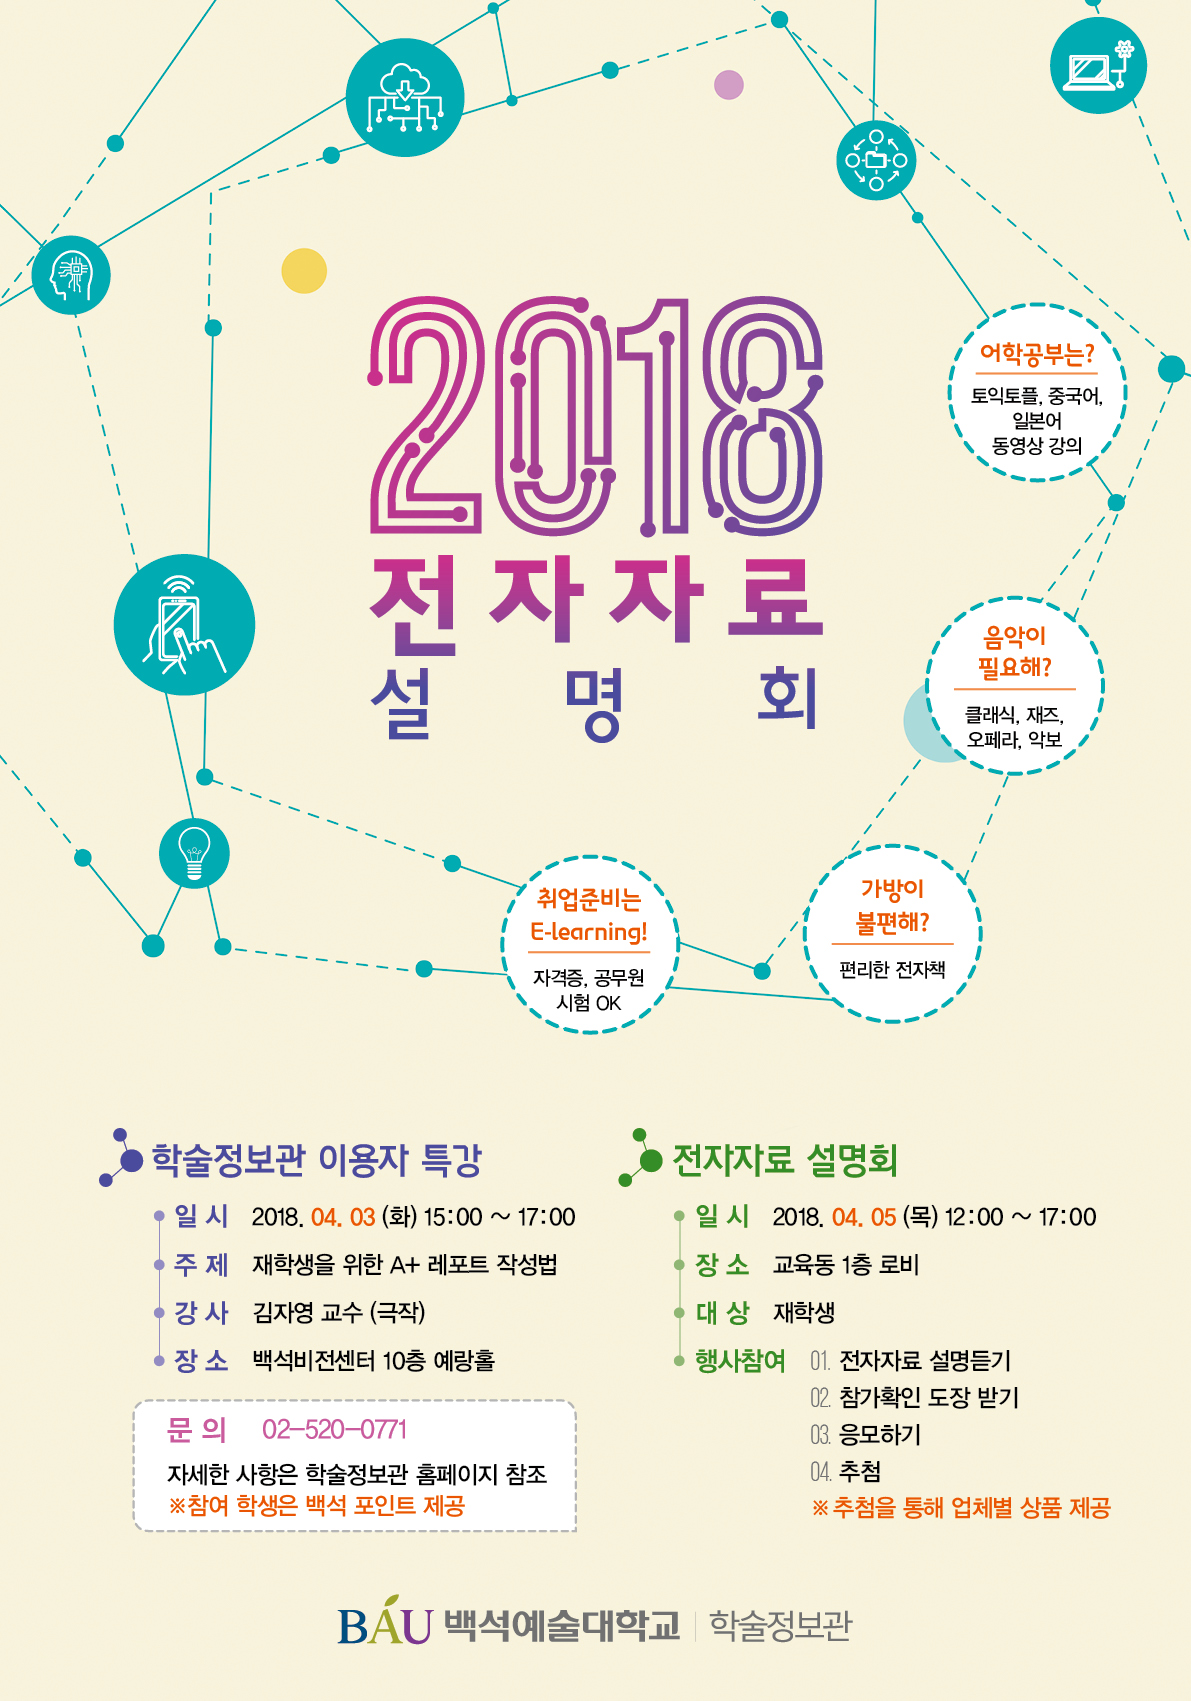 2018 학술정보관 이용자 특강 및 전자자료설명회 행사 안내